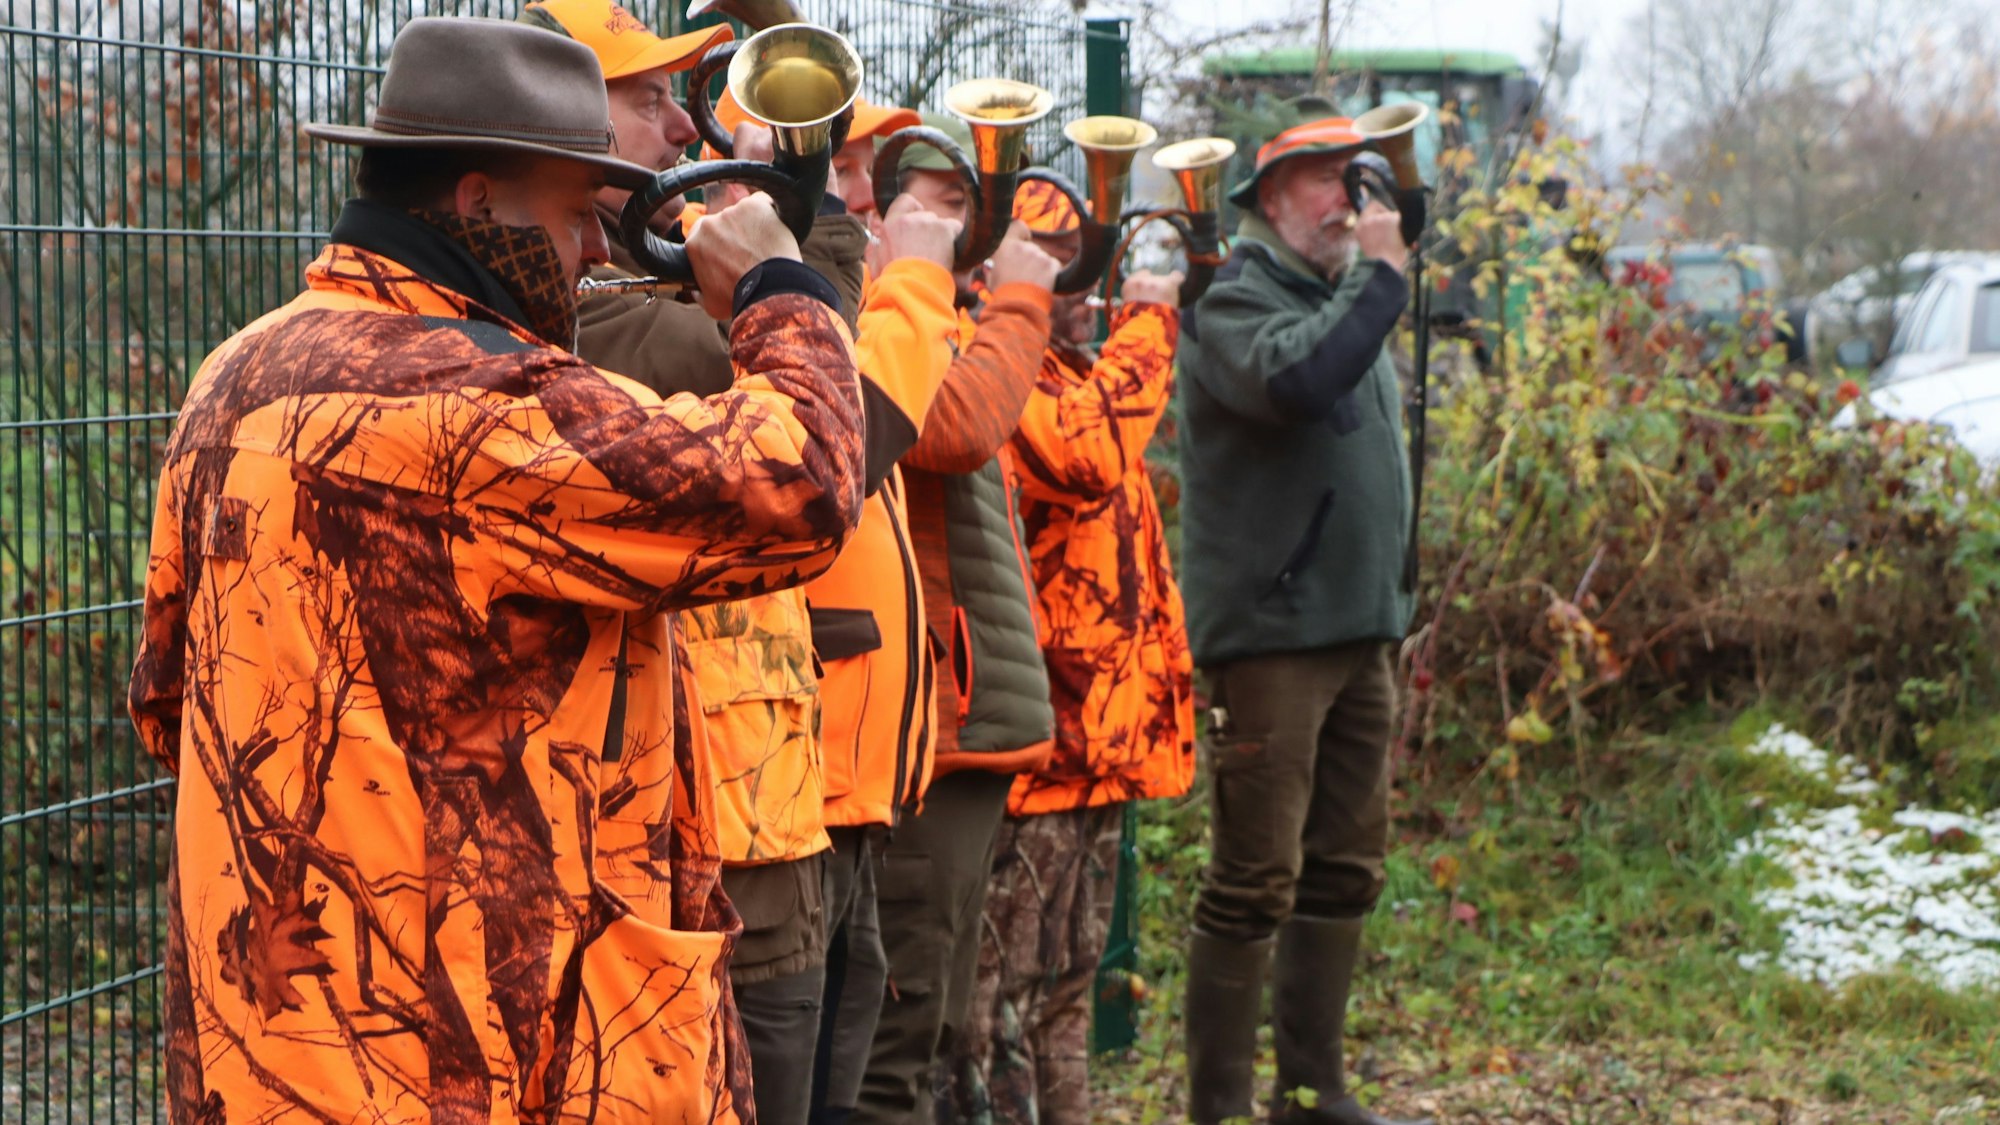 Jäger in orangefarbenen Jacken blasen in ihre Jagdhörner.